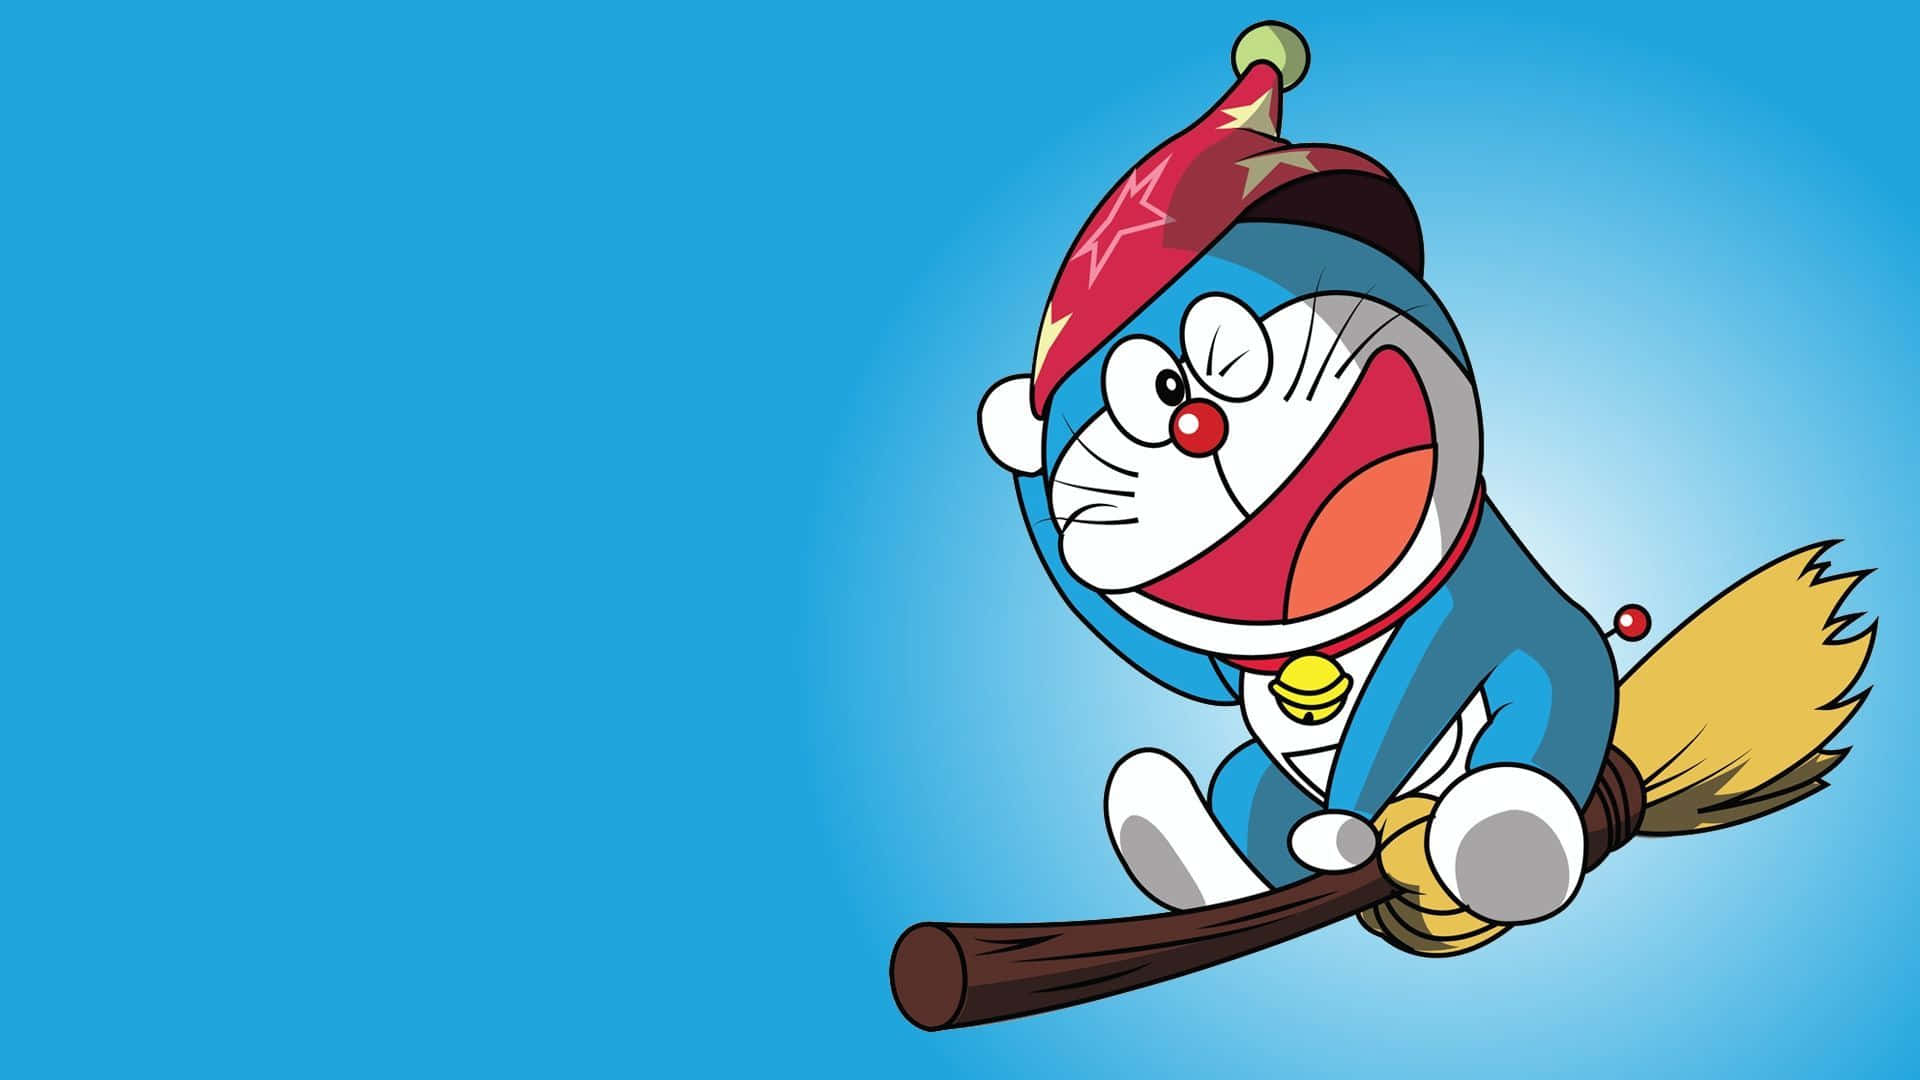 Derliebenswerte Roboter-kater Doraemon, Der Nobita Bei Seinen Abenteuern Unterstützt.